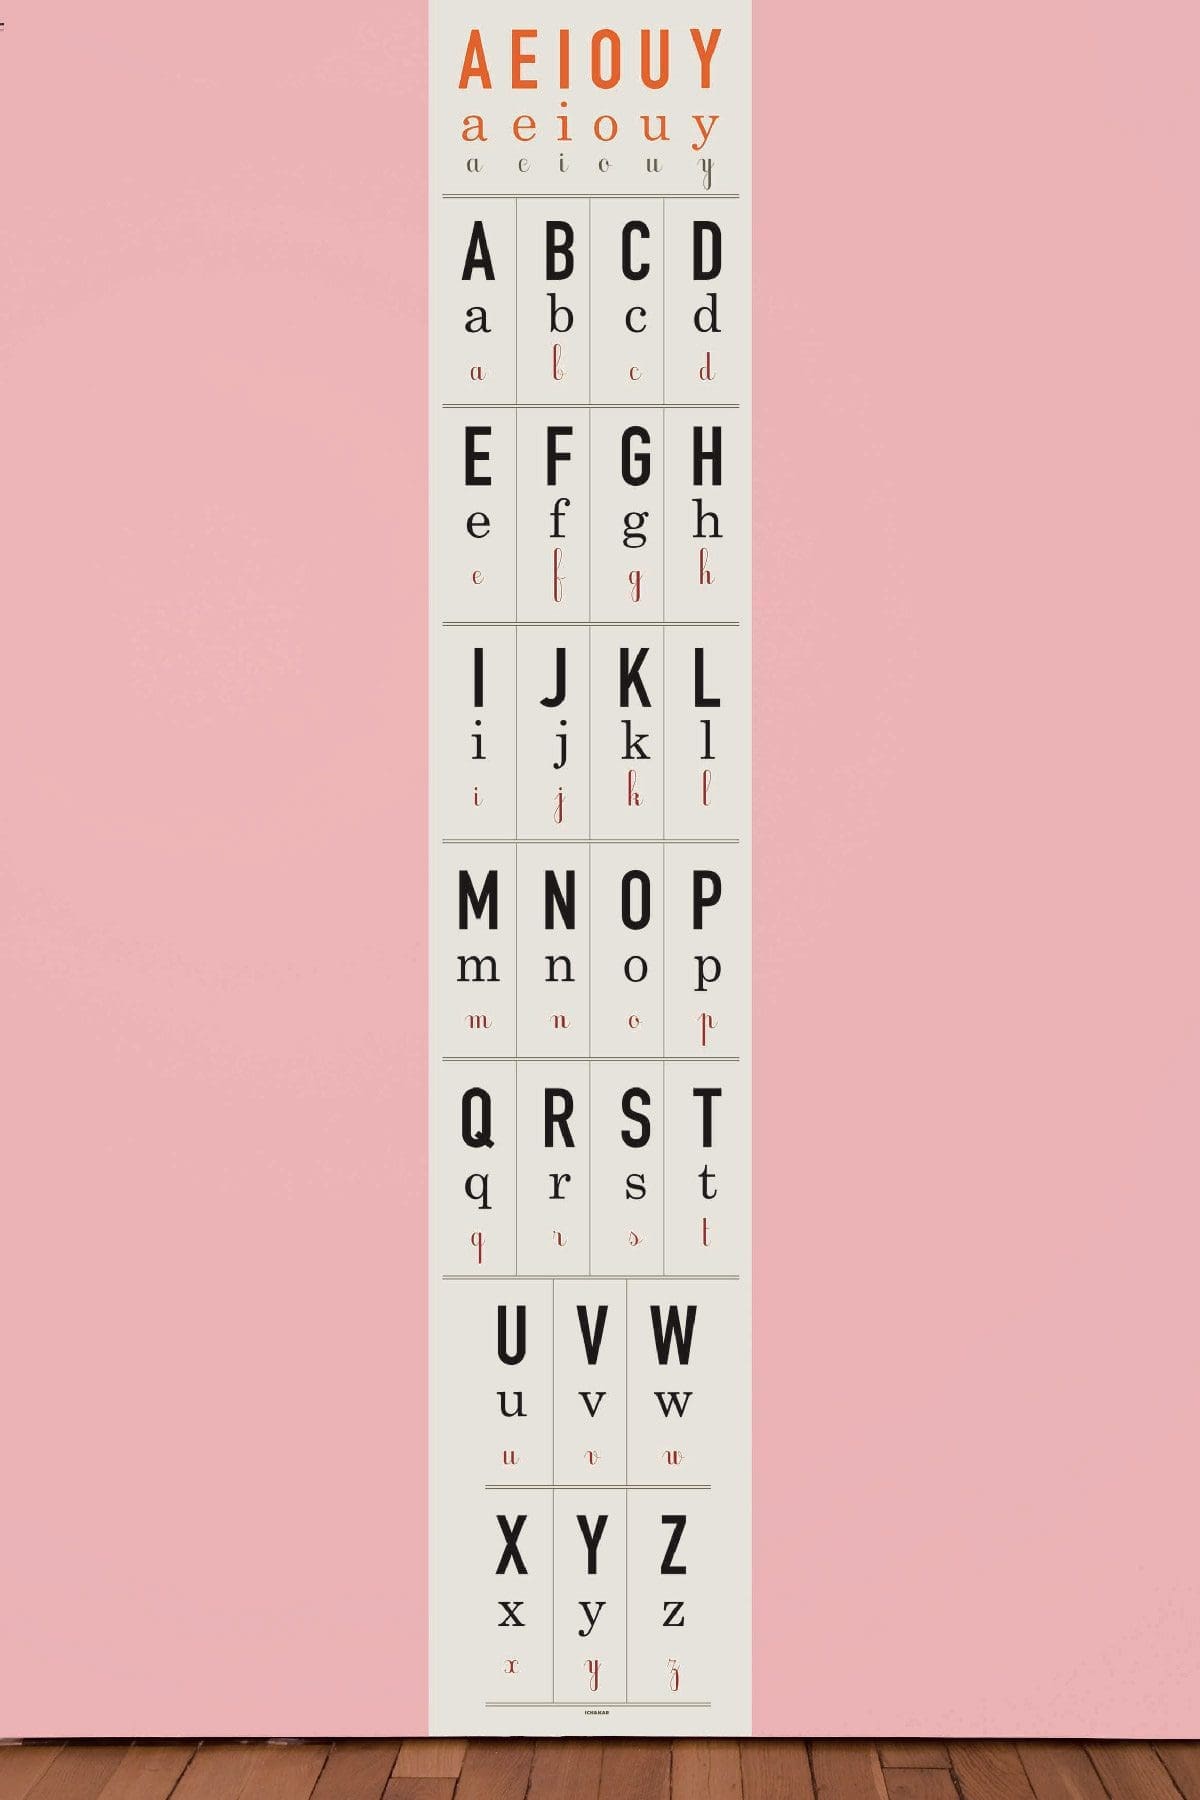 Papier peint AEIOUY, collection Watch, Look & Learn, un alphabet en lettres capitales, bas-de-casse et en cursive, dessiné par Ich&Kar